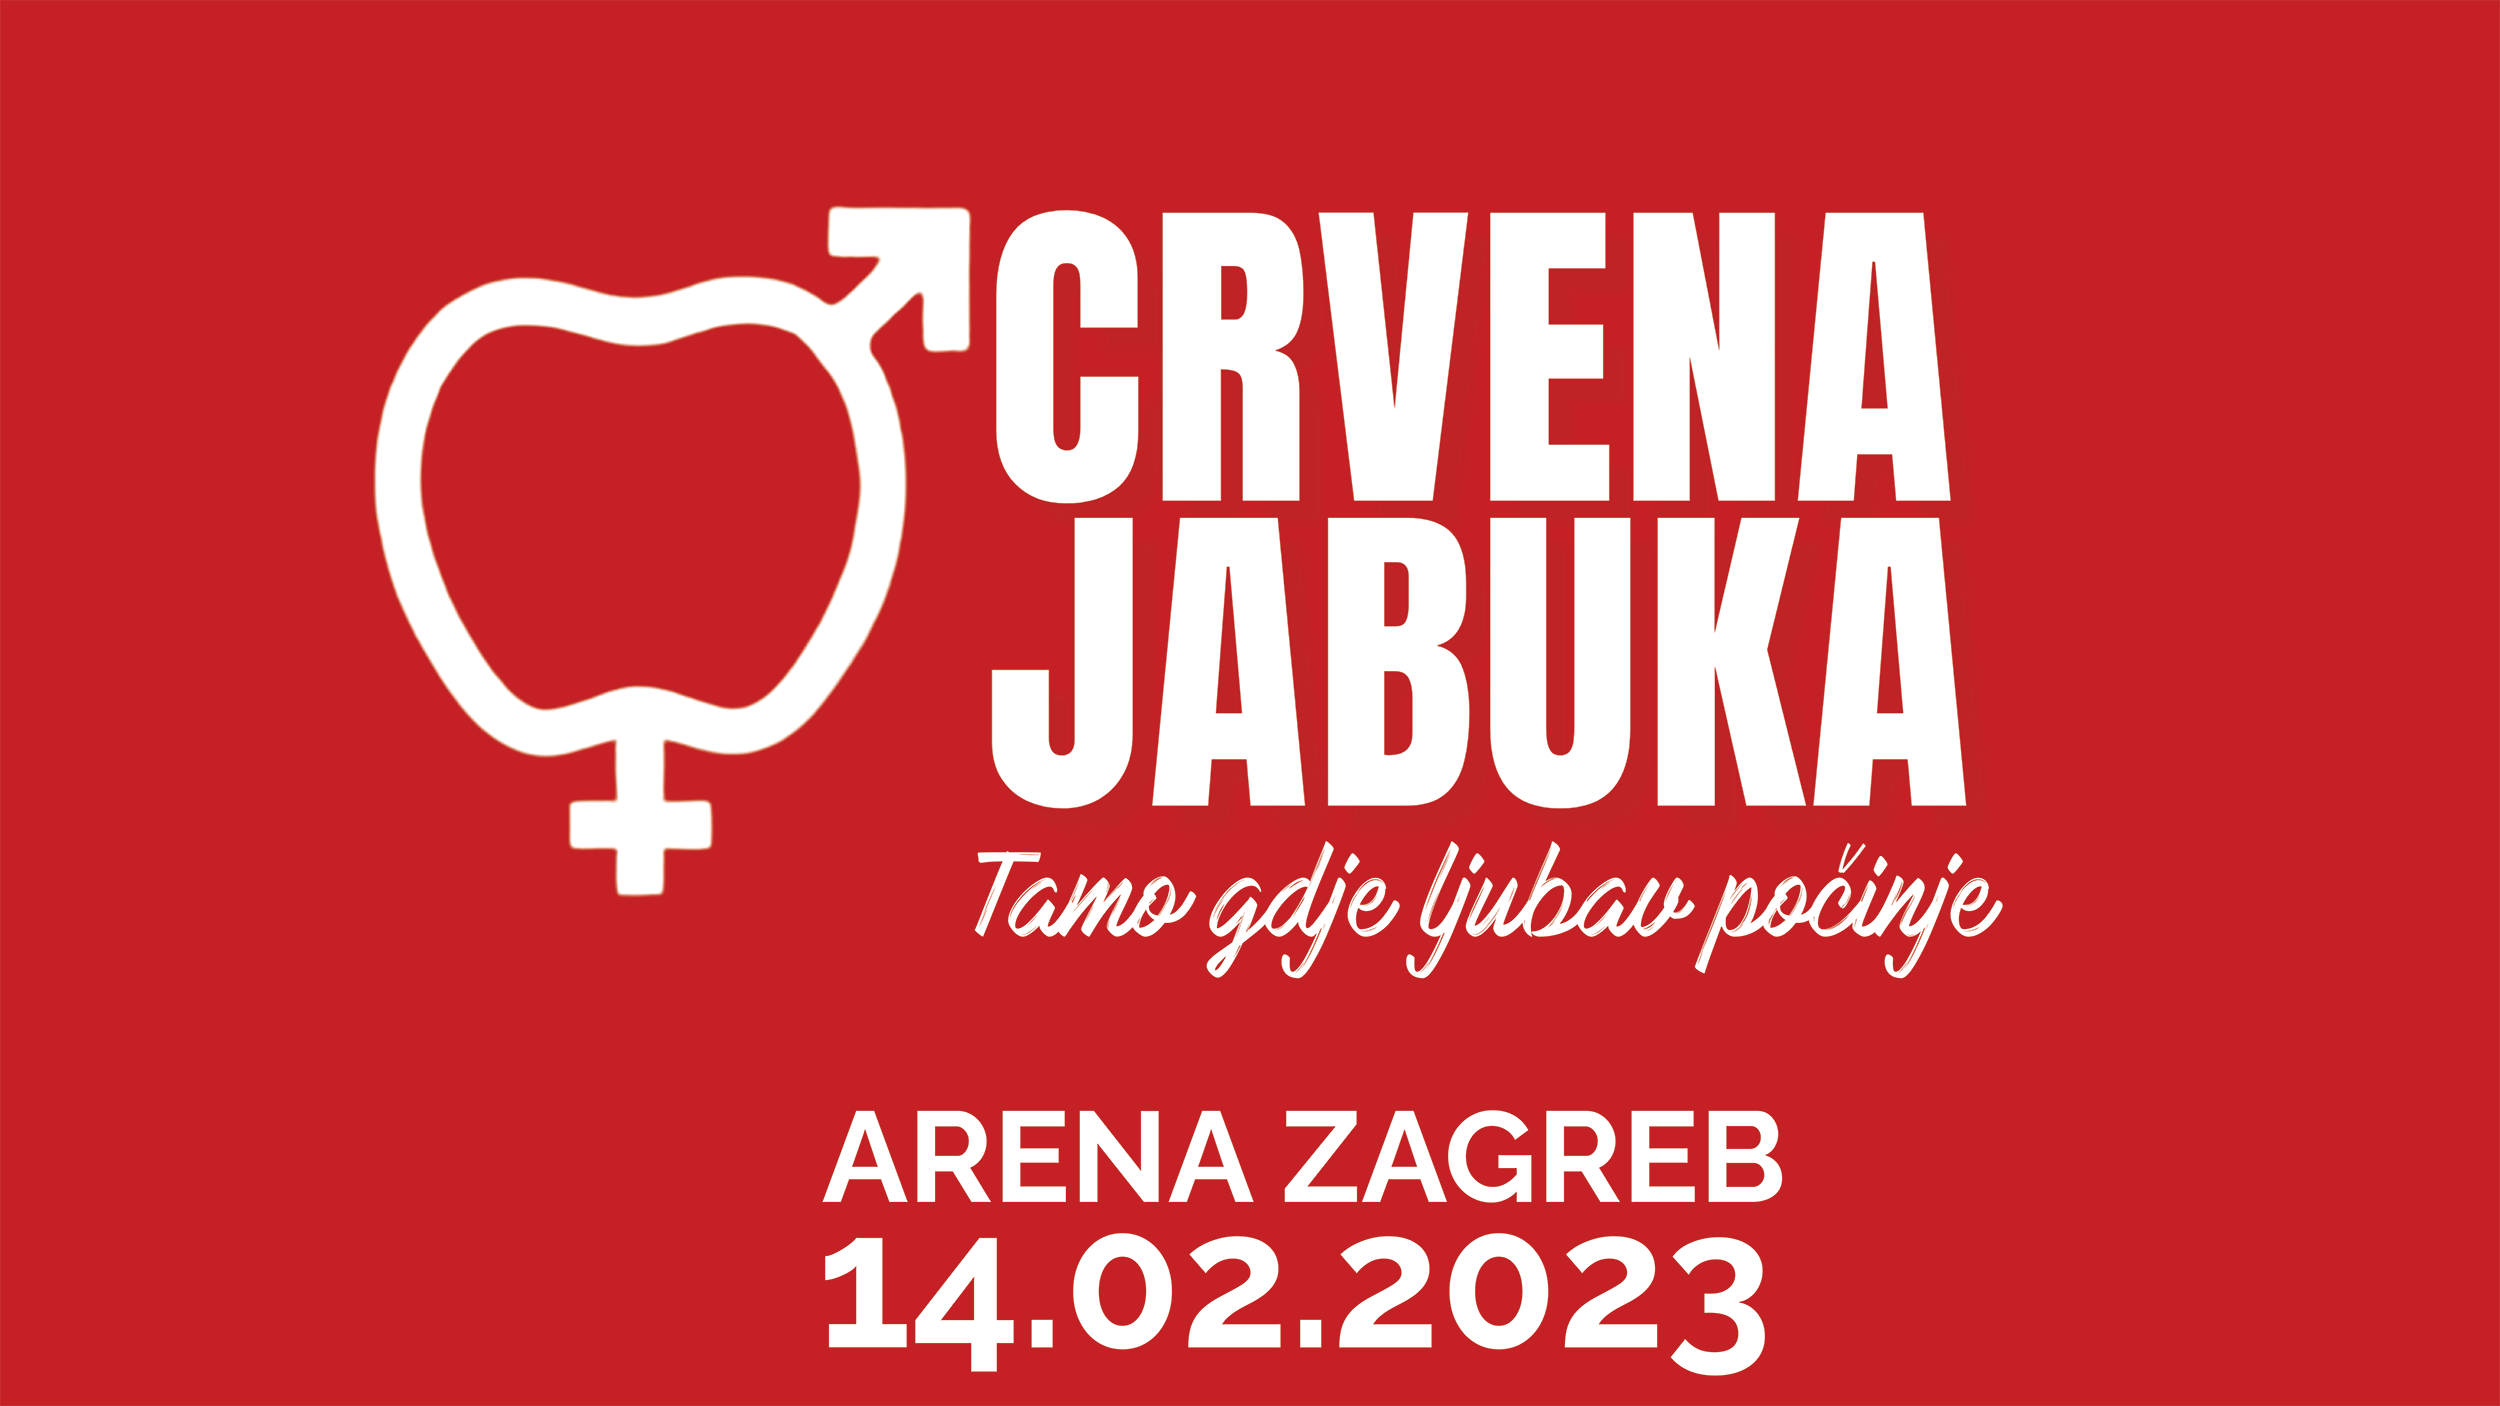 Crvena jabuka najavila koncert na Valentinovo u Areni Zagreb